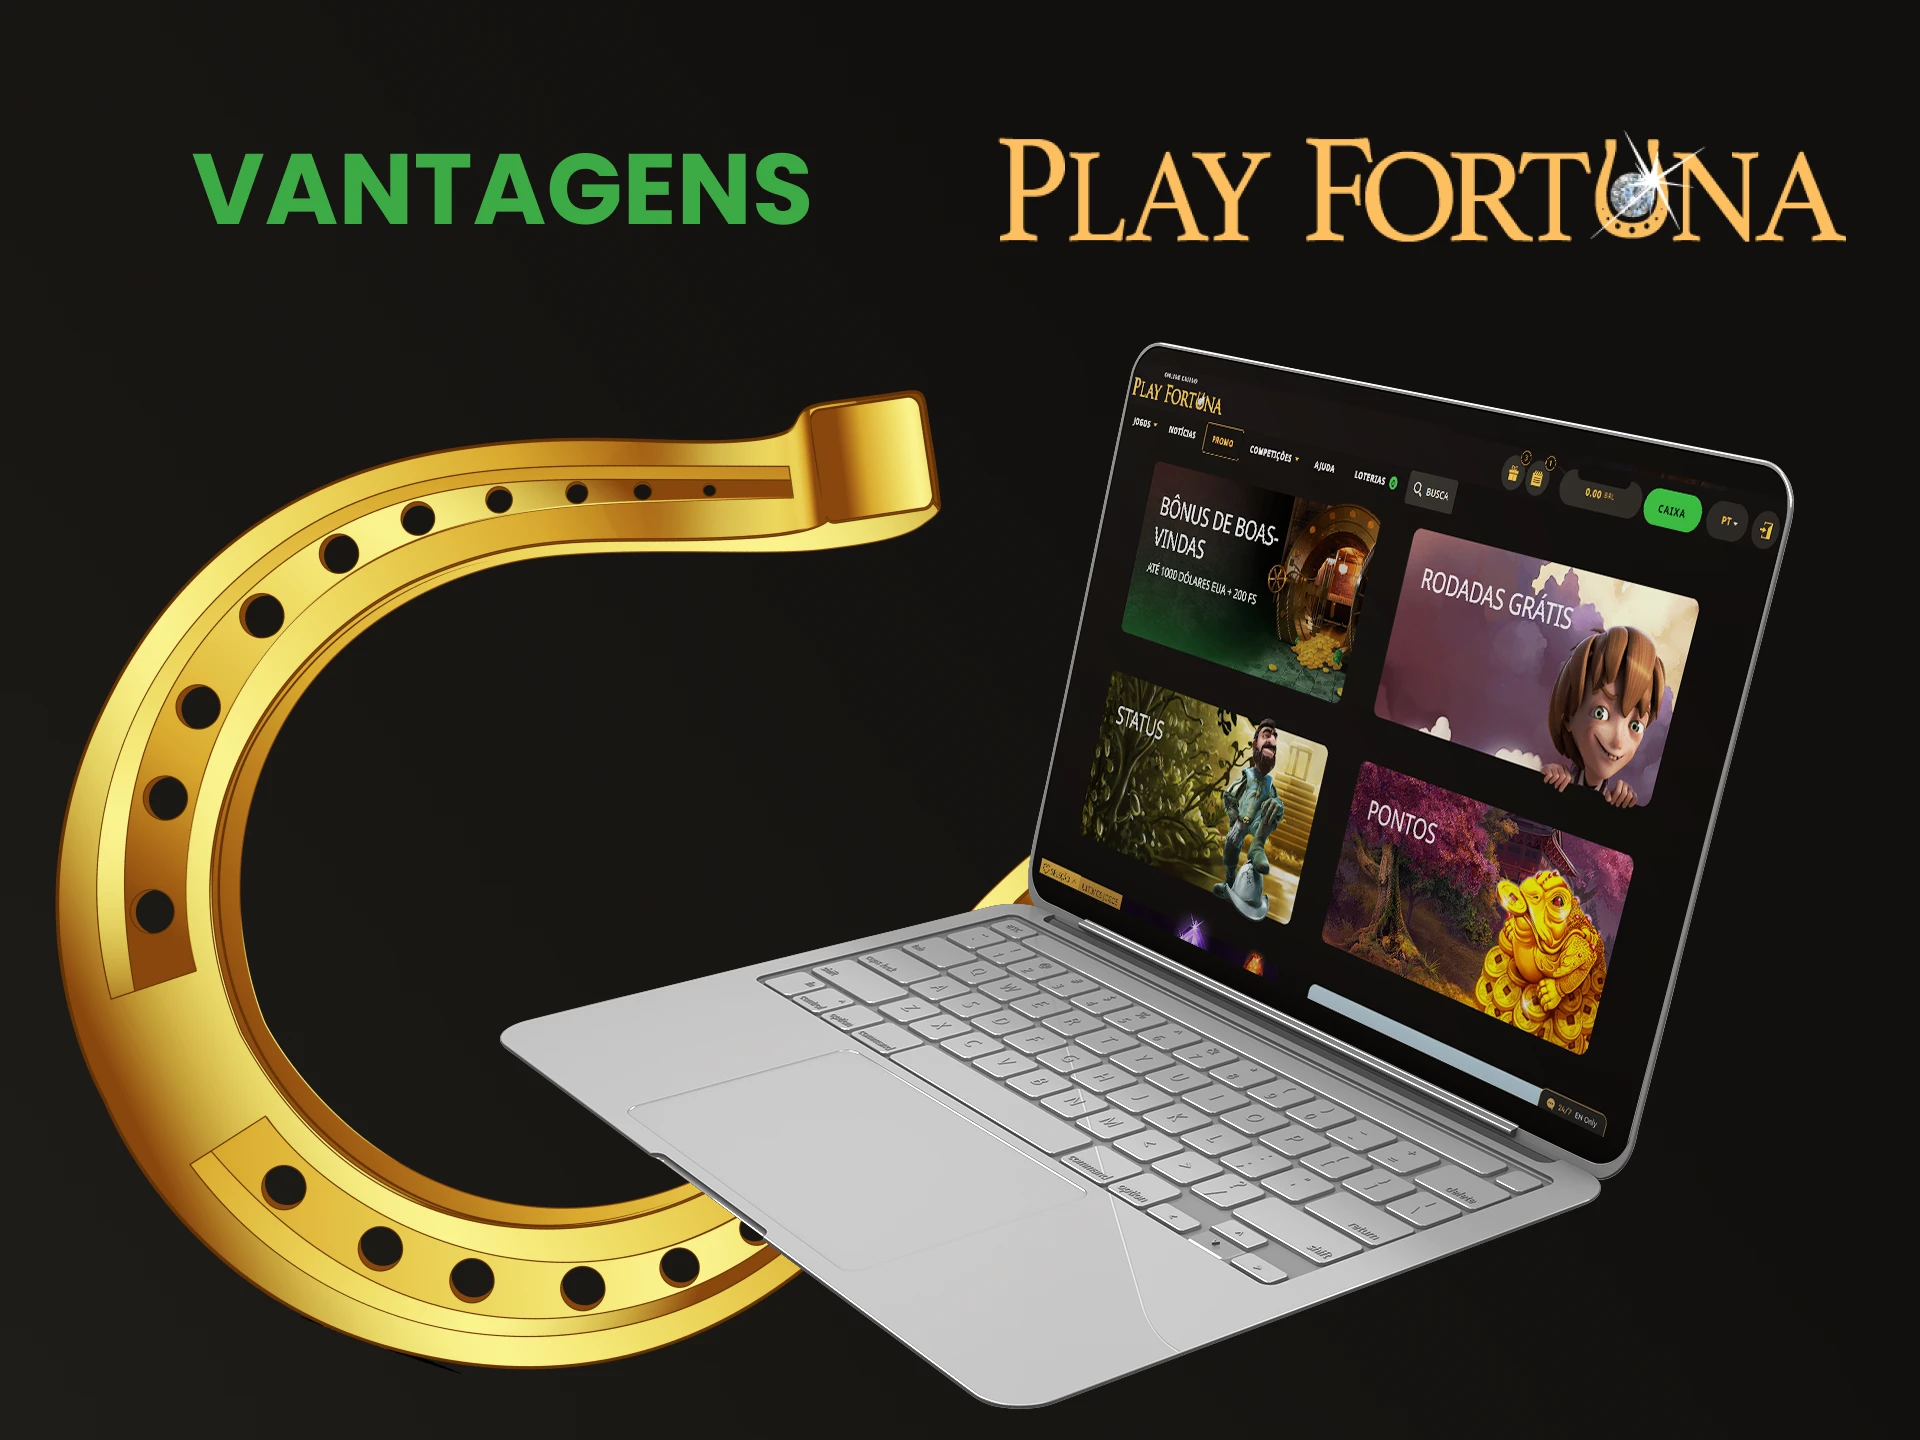 Conheça as vantagens do site Play Fortuna.